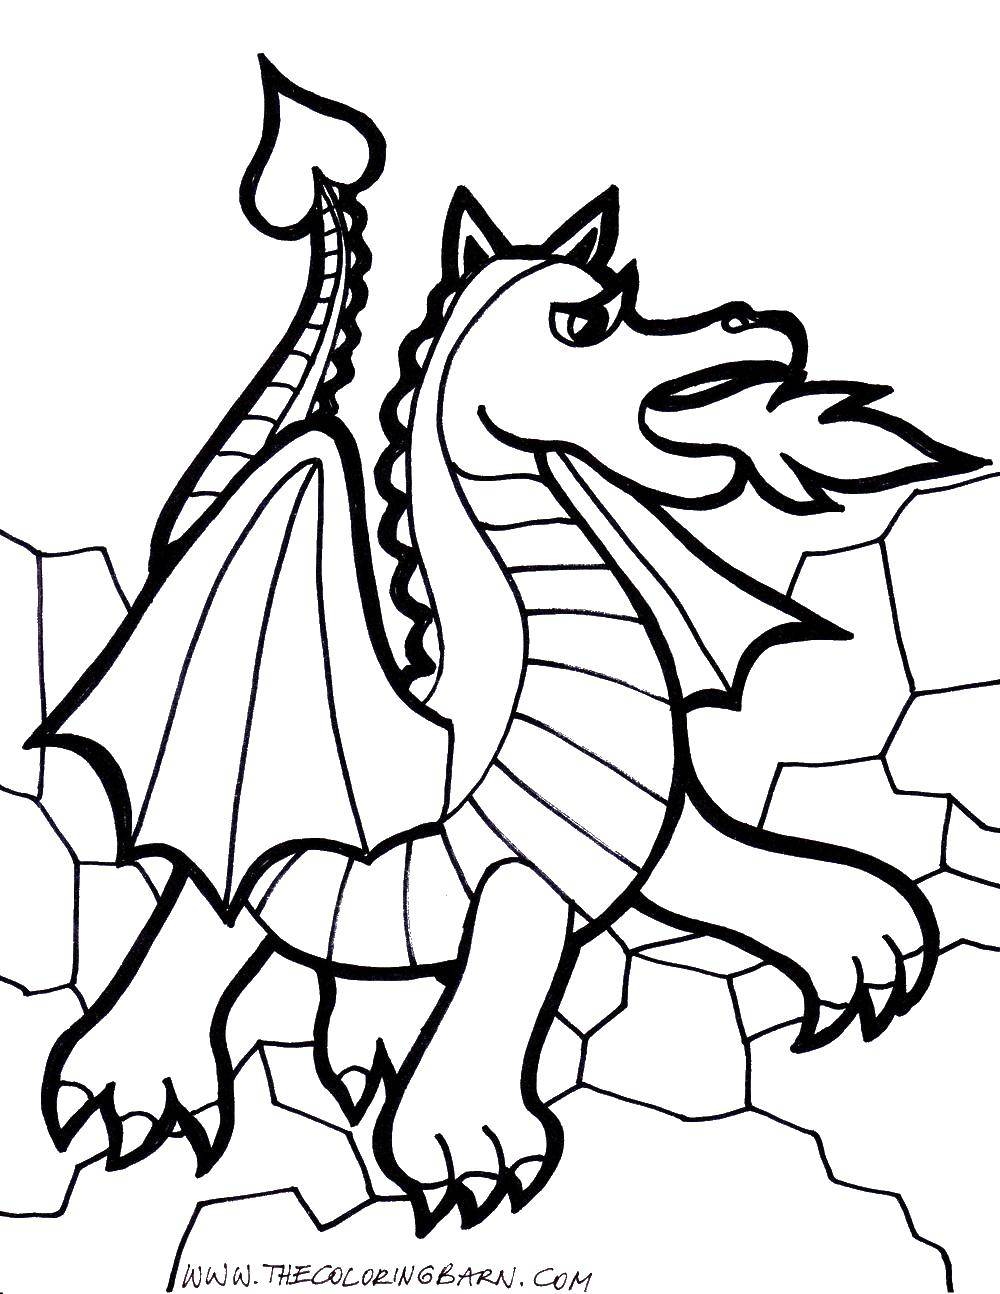 Раскраски драконы - Для печати - Бесплатно - Kids Drawing Hub